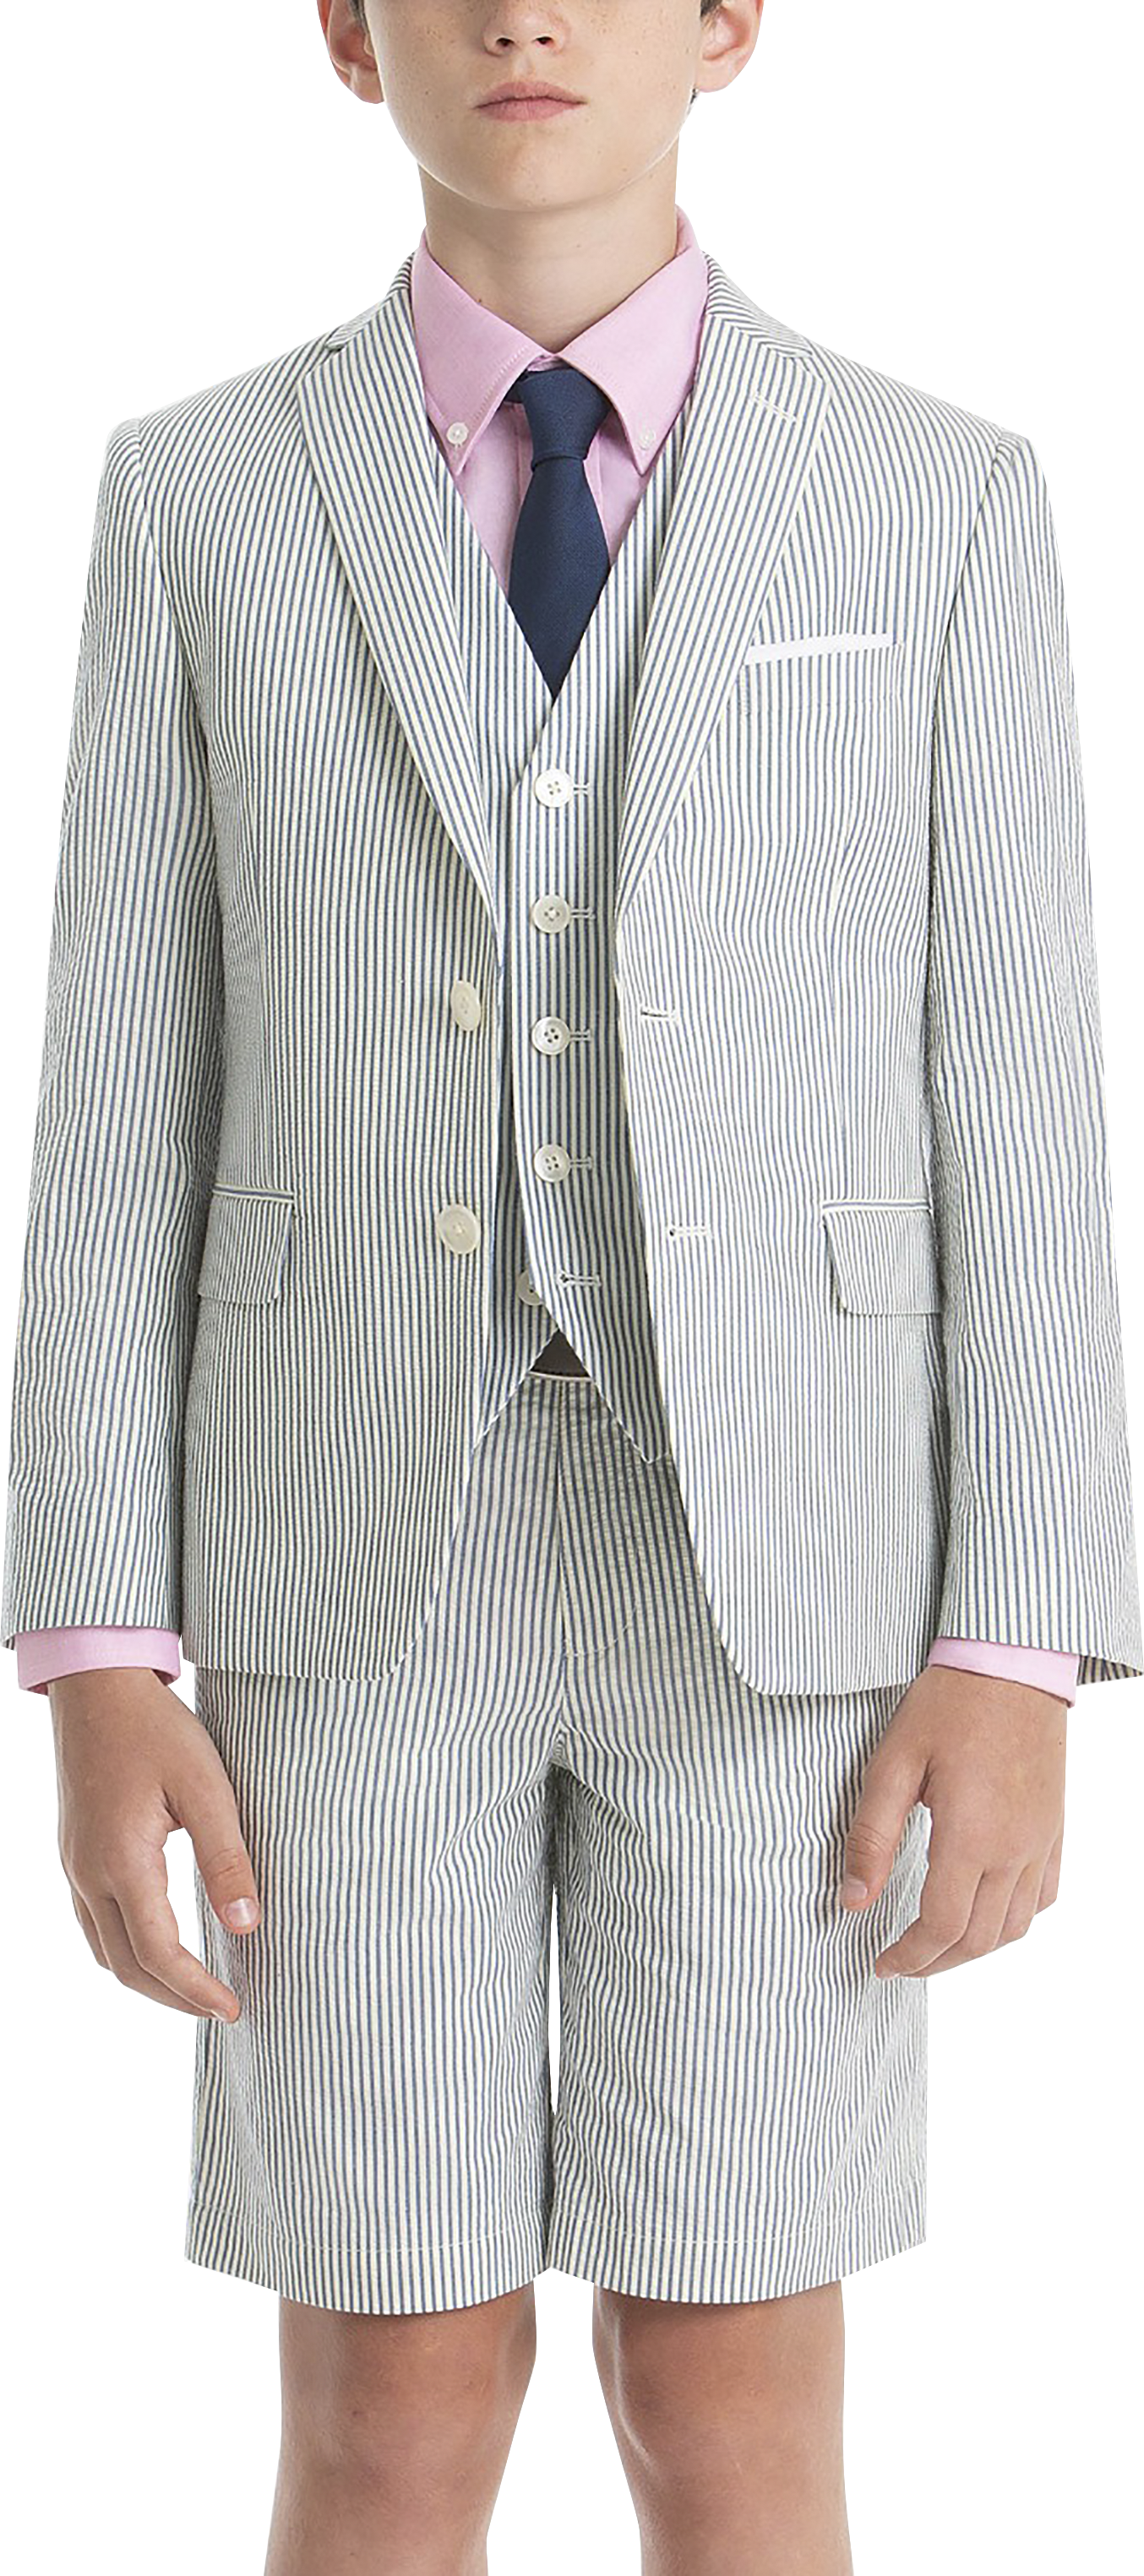 Boys (Size 8-20) Suit Separates Jacket